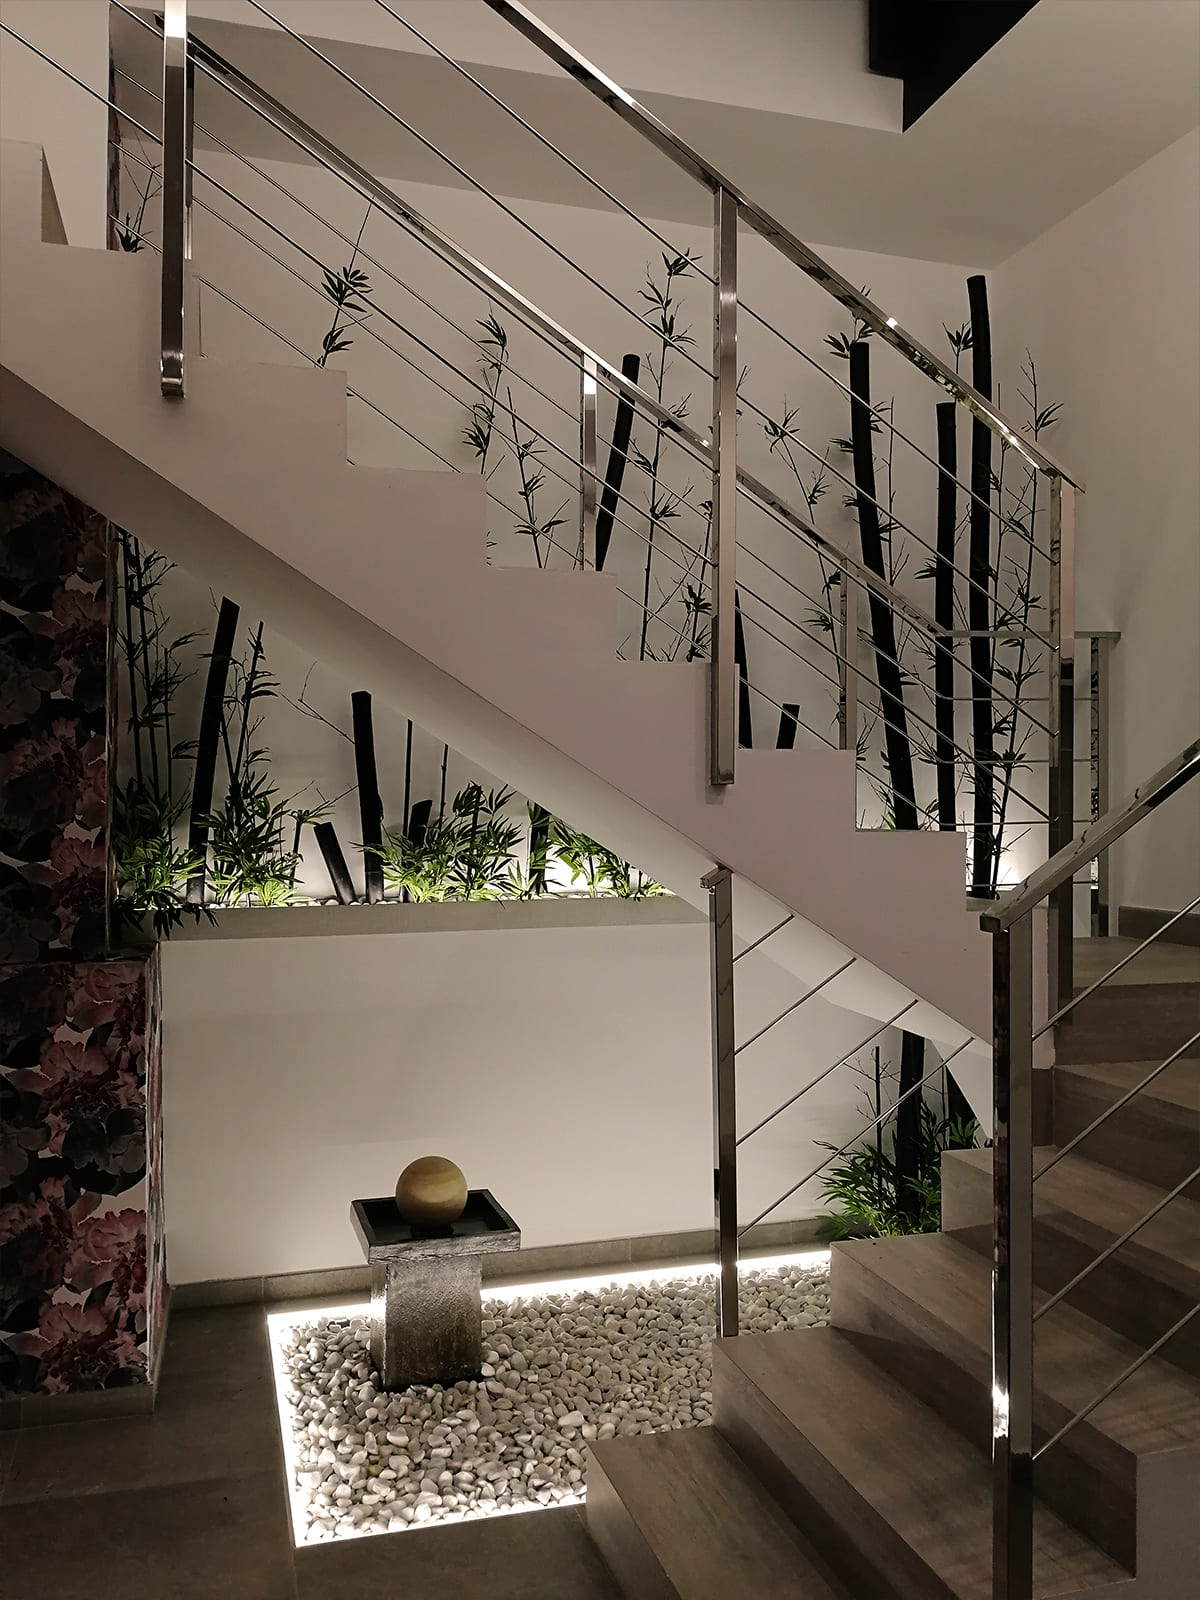 diseño-interiores-entrada-vivienda-escalera-bambu-JM-02_HIDROJARDIN-Bañeres